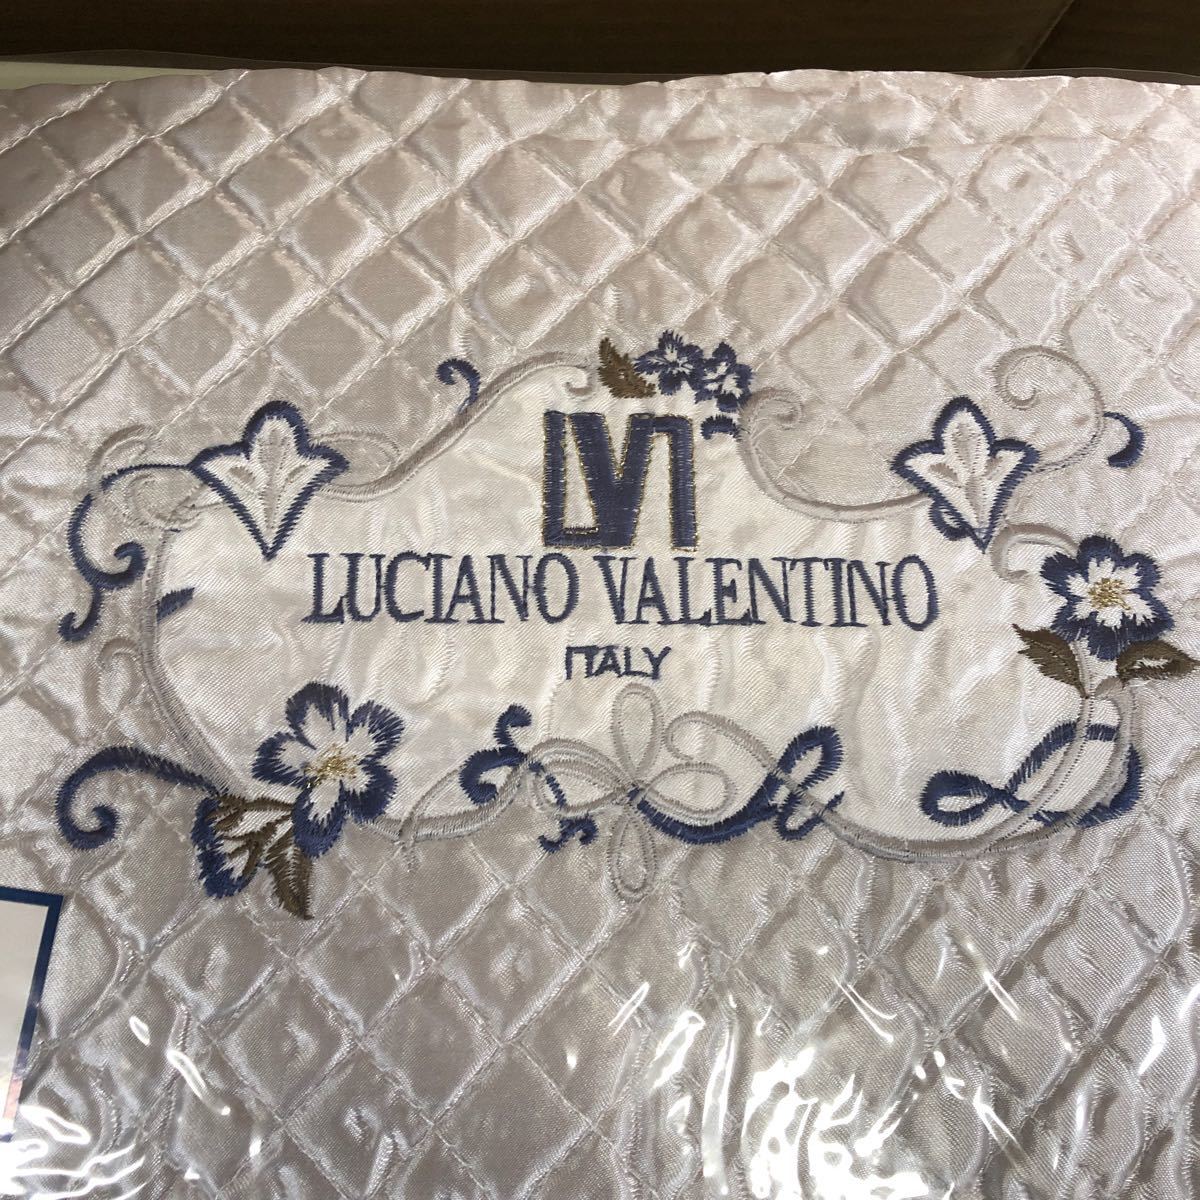 LUCIANO VALENTINO ITALY シルク混肌布団 サイズ150×200cm 寝具 _画像4